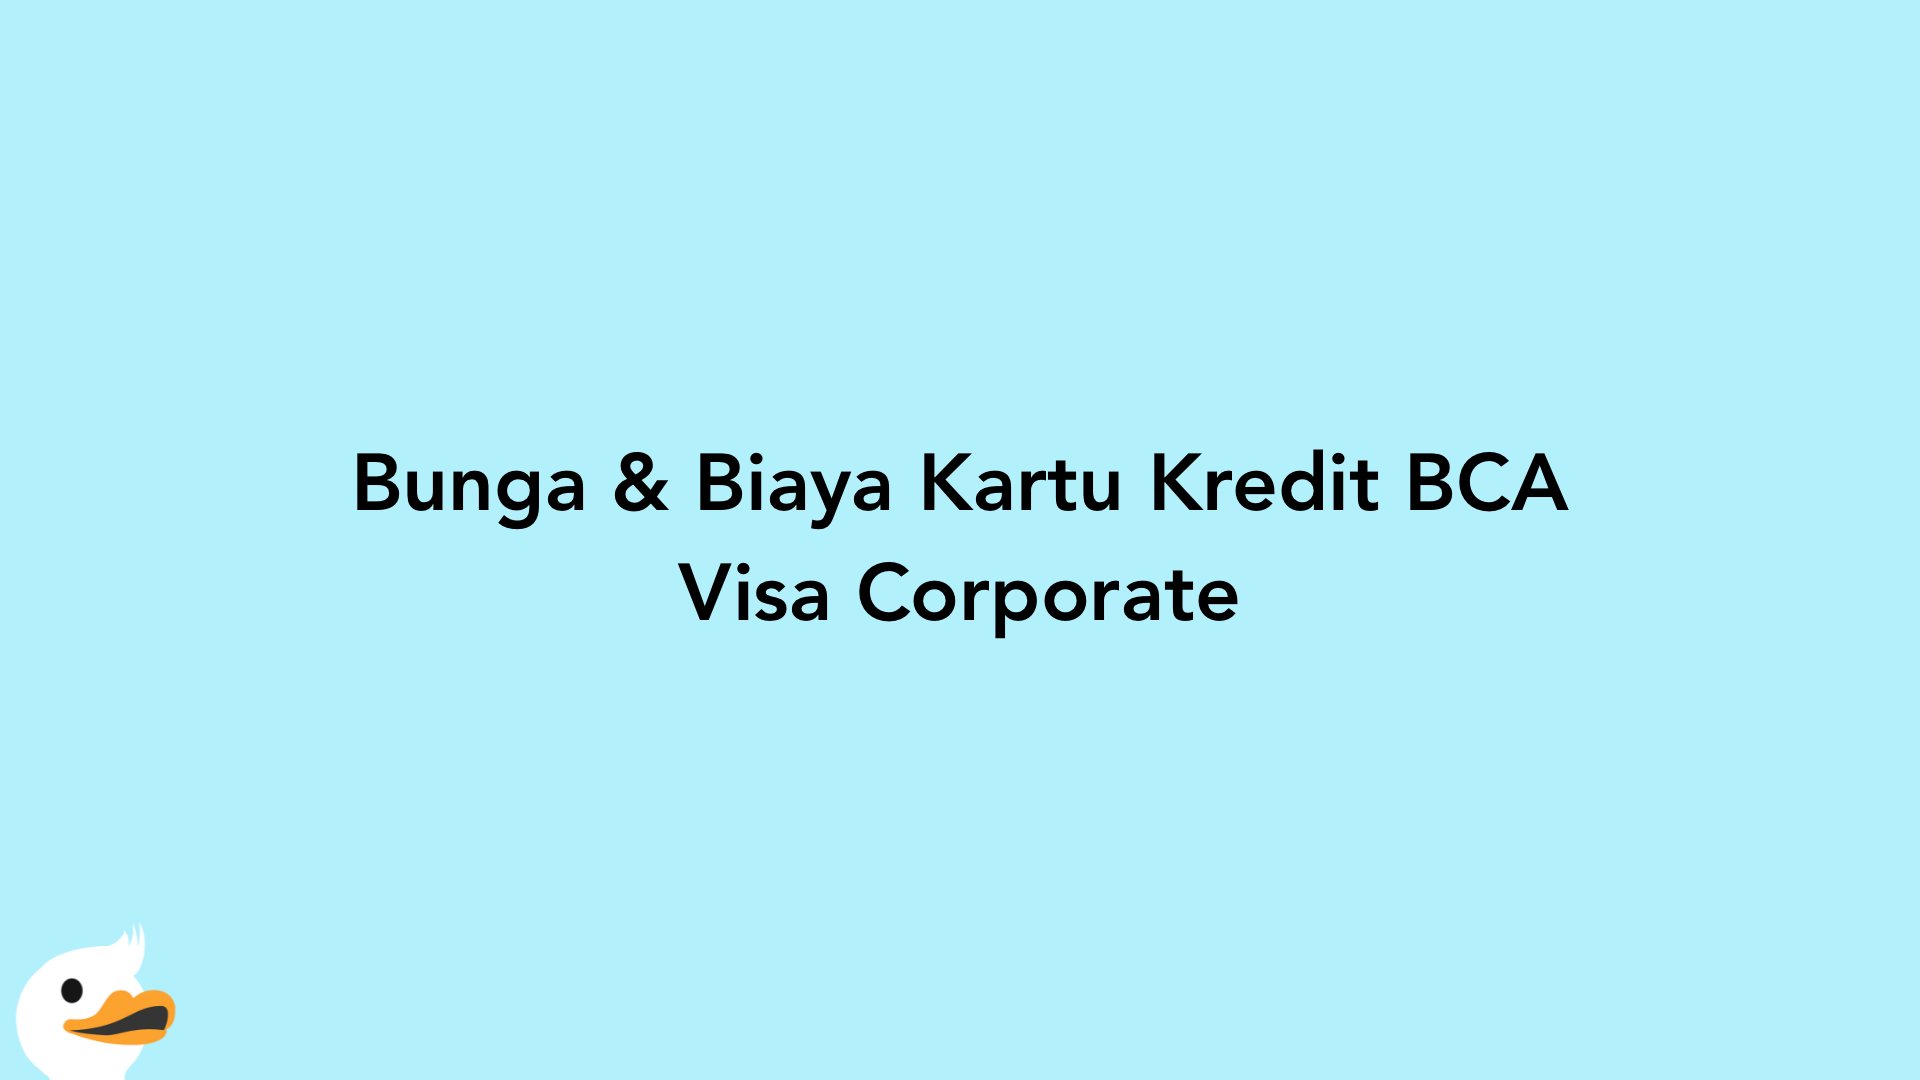 Bunga & Biaya Kartu Kredit BCA Visa Corporate